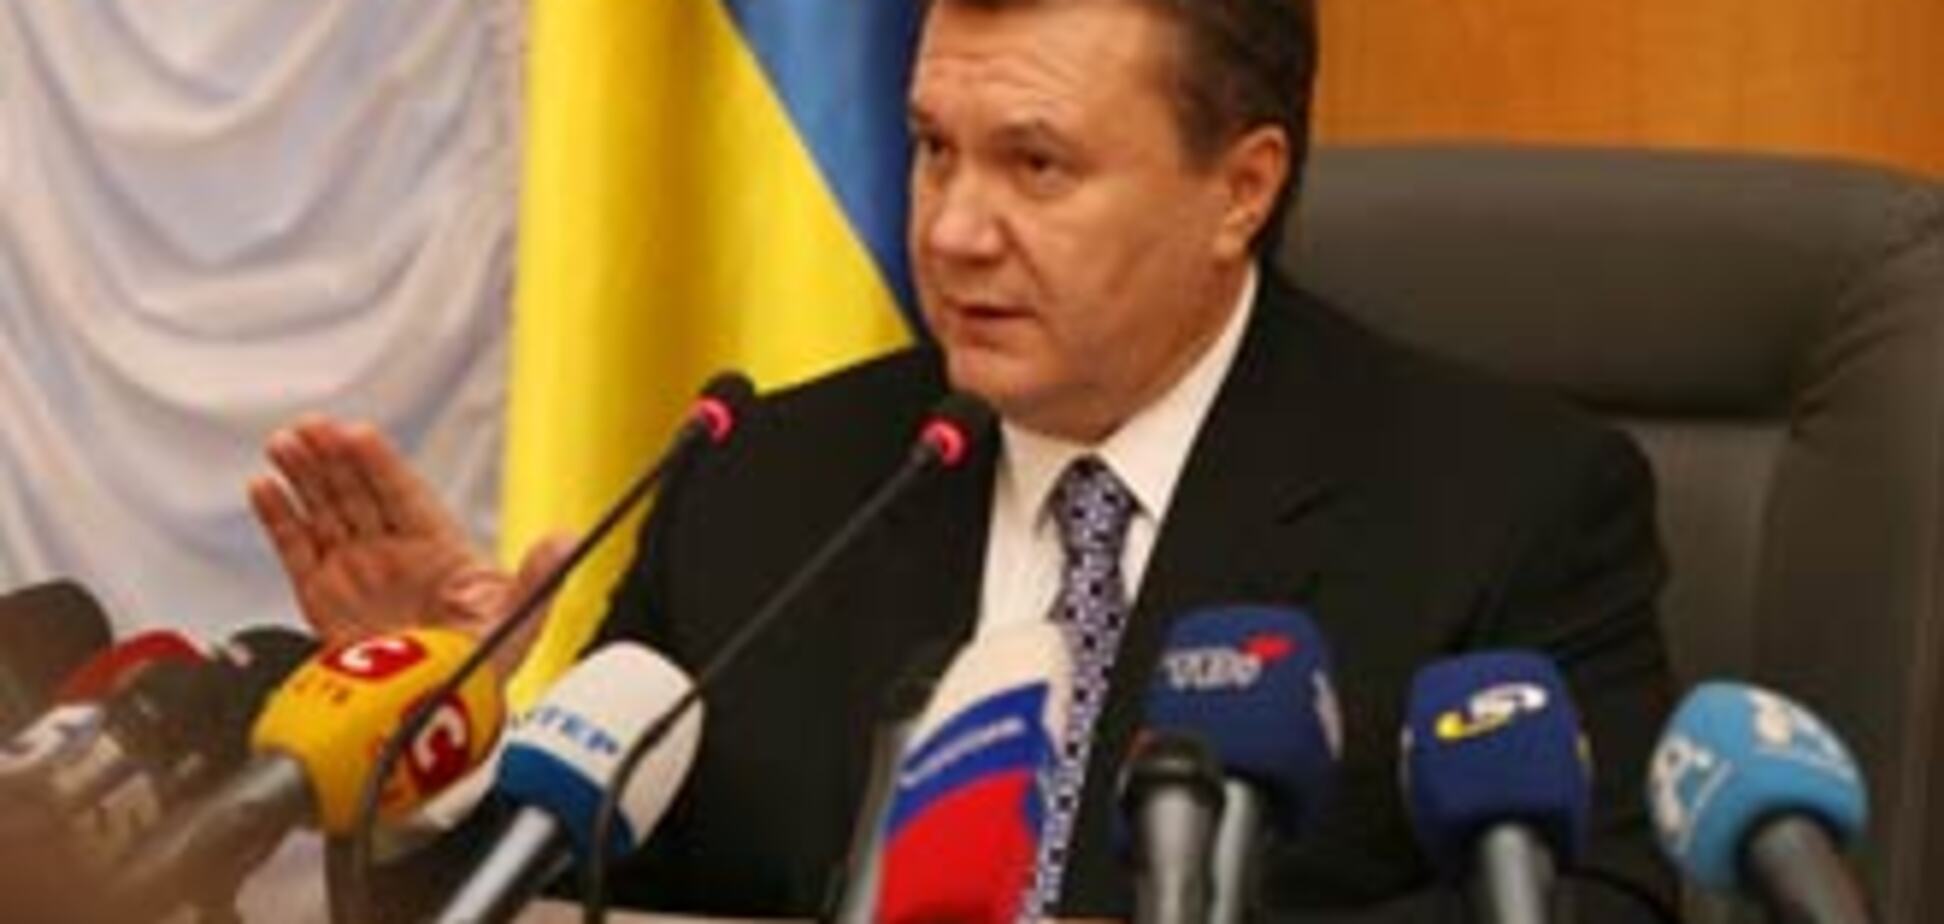 Янукович готовит коалиционную революцию